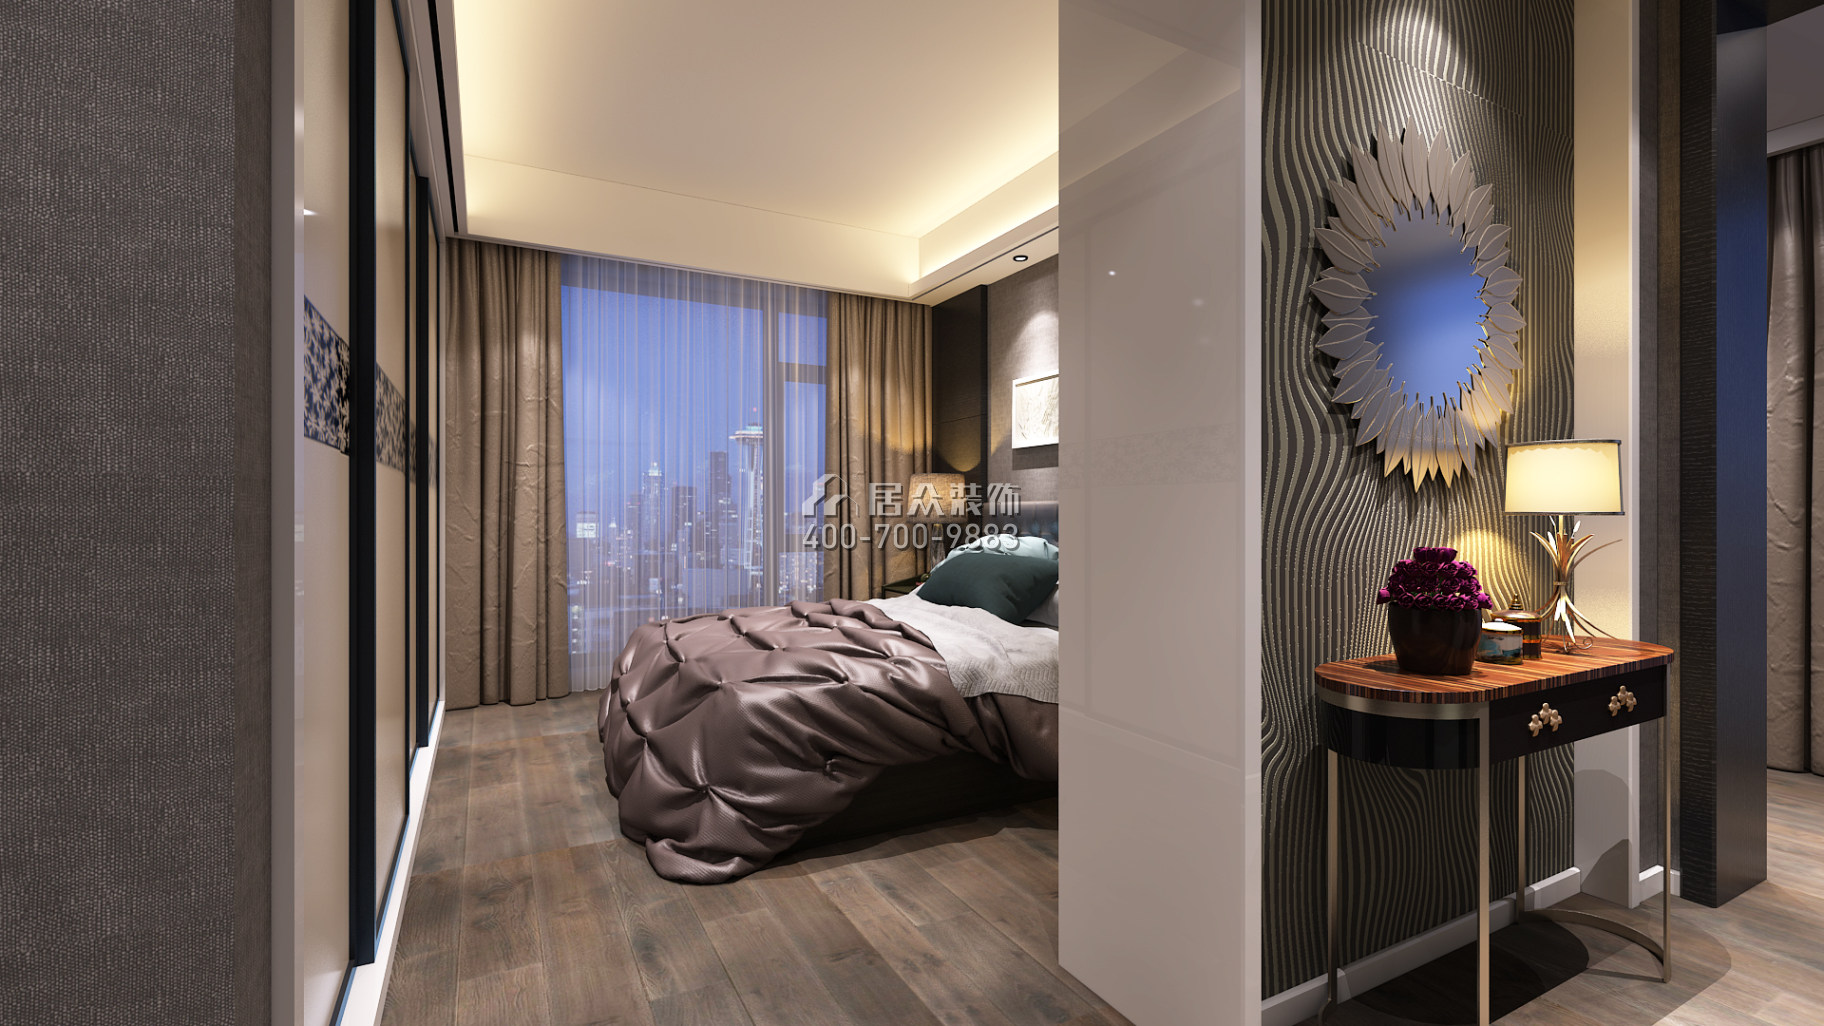 天源星城145平方米现代简约风格平层户型卧室装修效果图